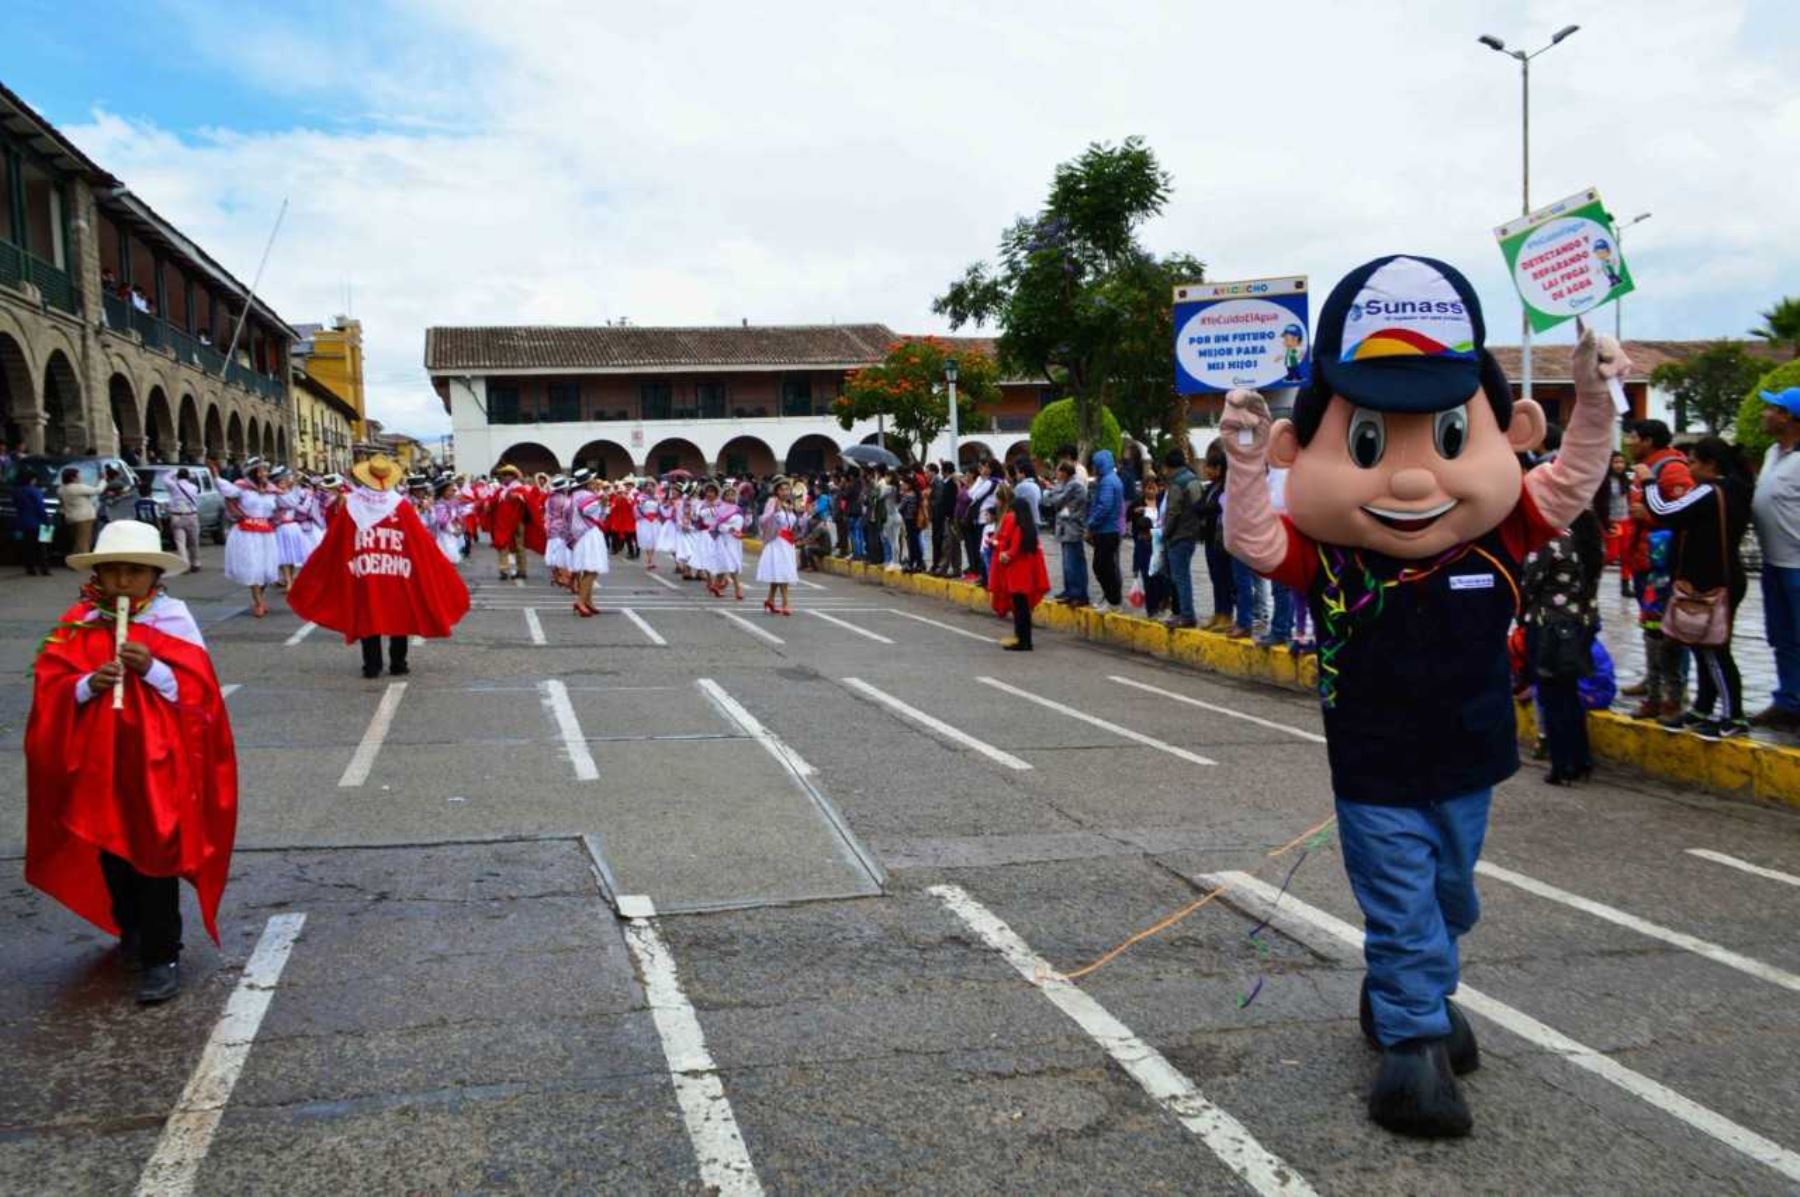 La Superintendencia Nacional de Servicios de Saneamiento (Sunass) exhortó a la población a cuidar y ahorrar el agua durante el desarrollo del Carnaval Ayacuchano 2018, considerado Patrimonio Cultural de la Nación desde el año 2004.